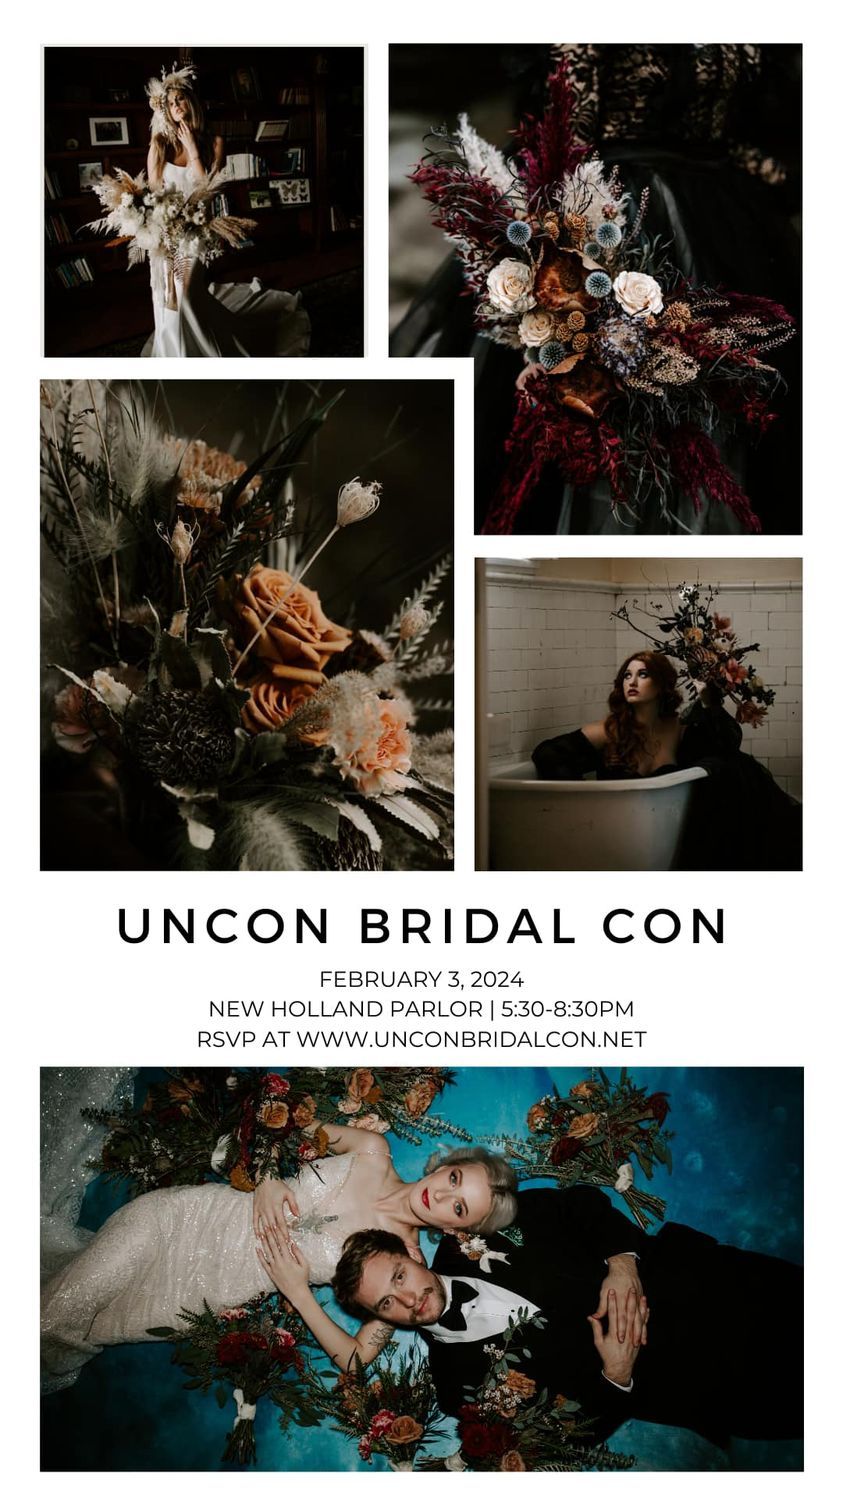 Image for post: Uncon Bridal Con - February 2024